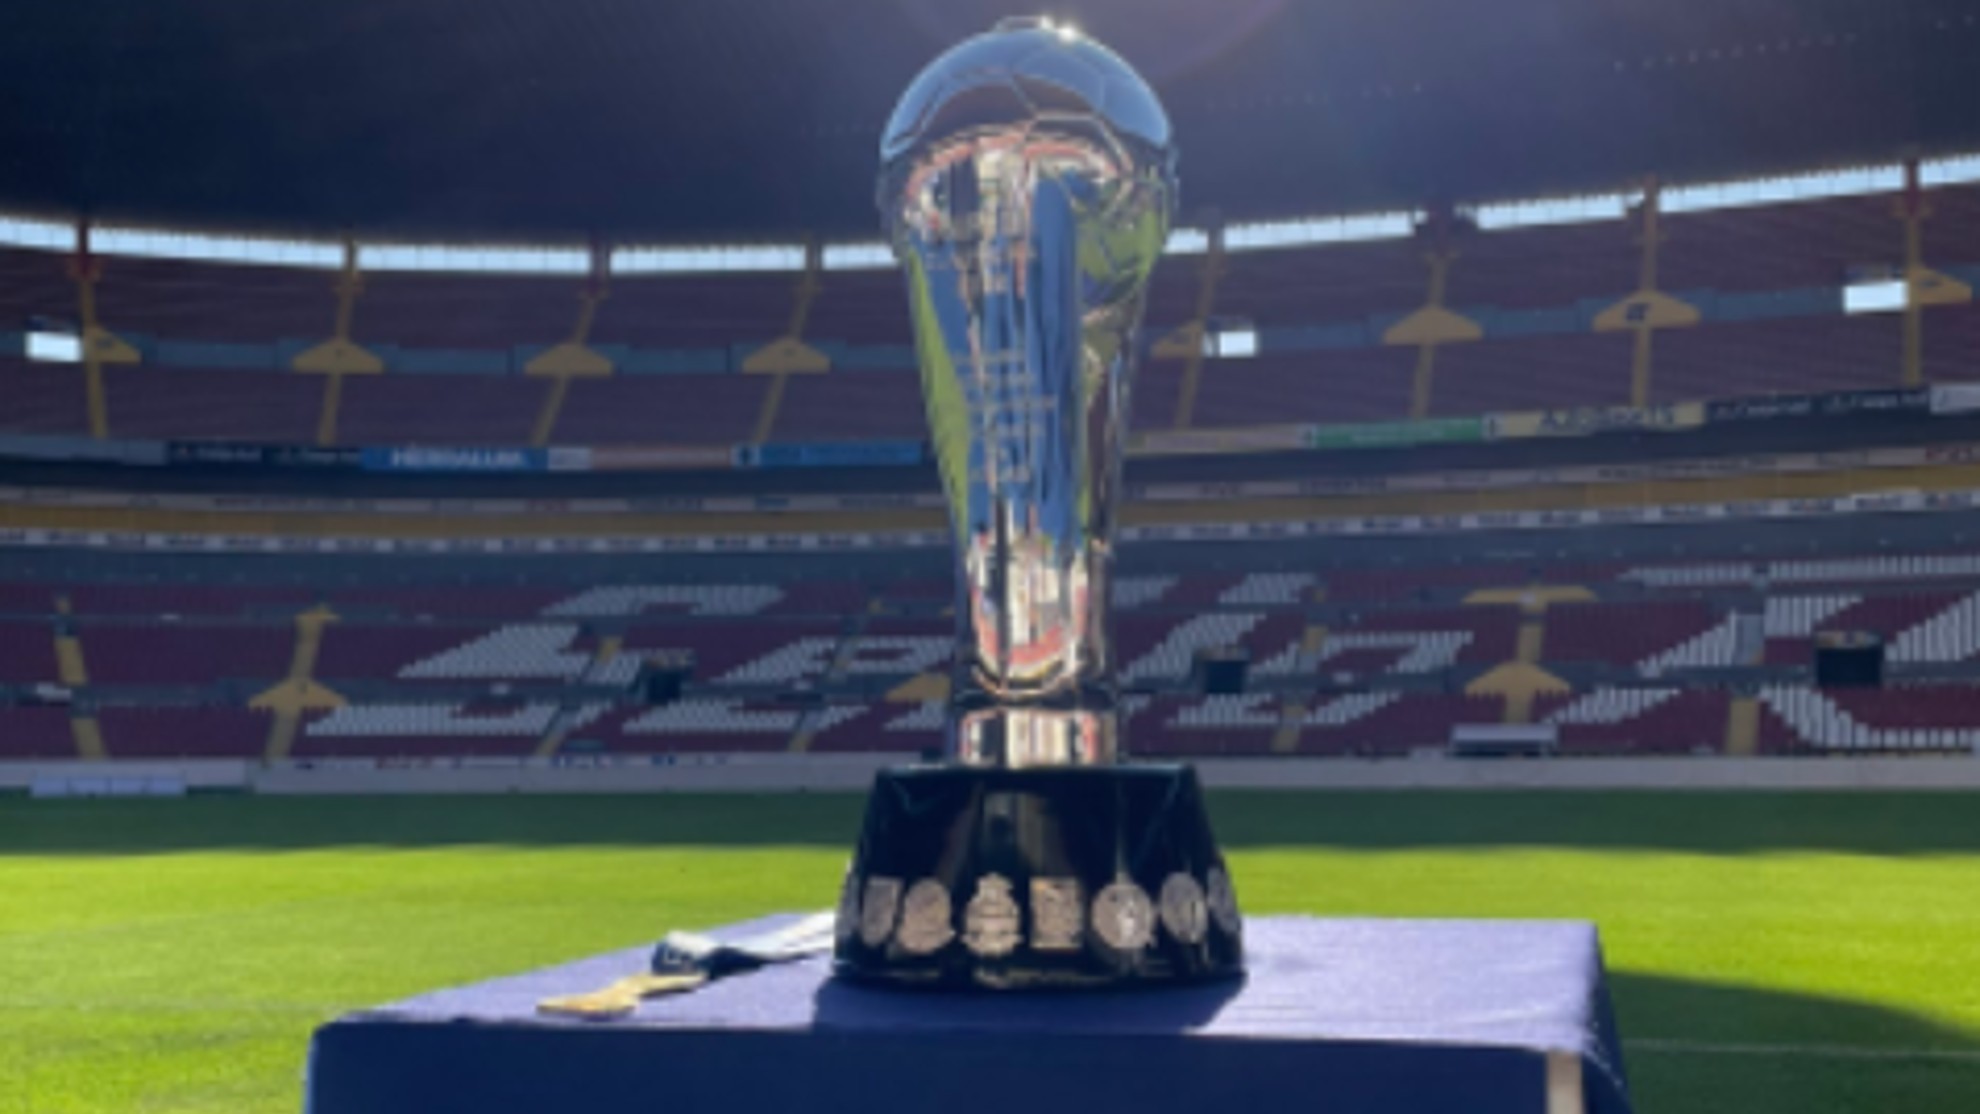 Liga MX: Equipos más ganadores e historial completo del torneo